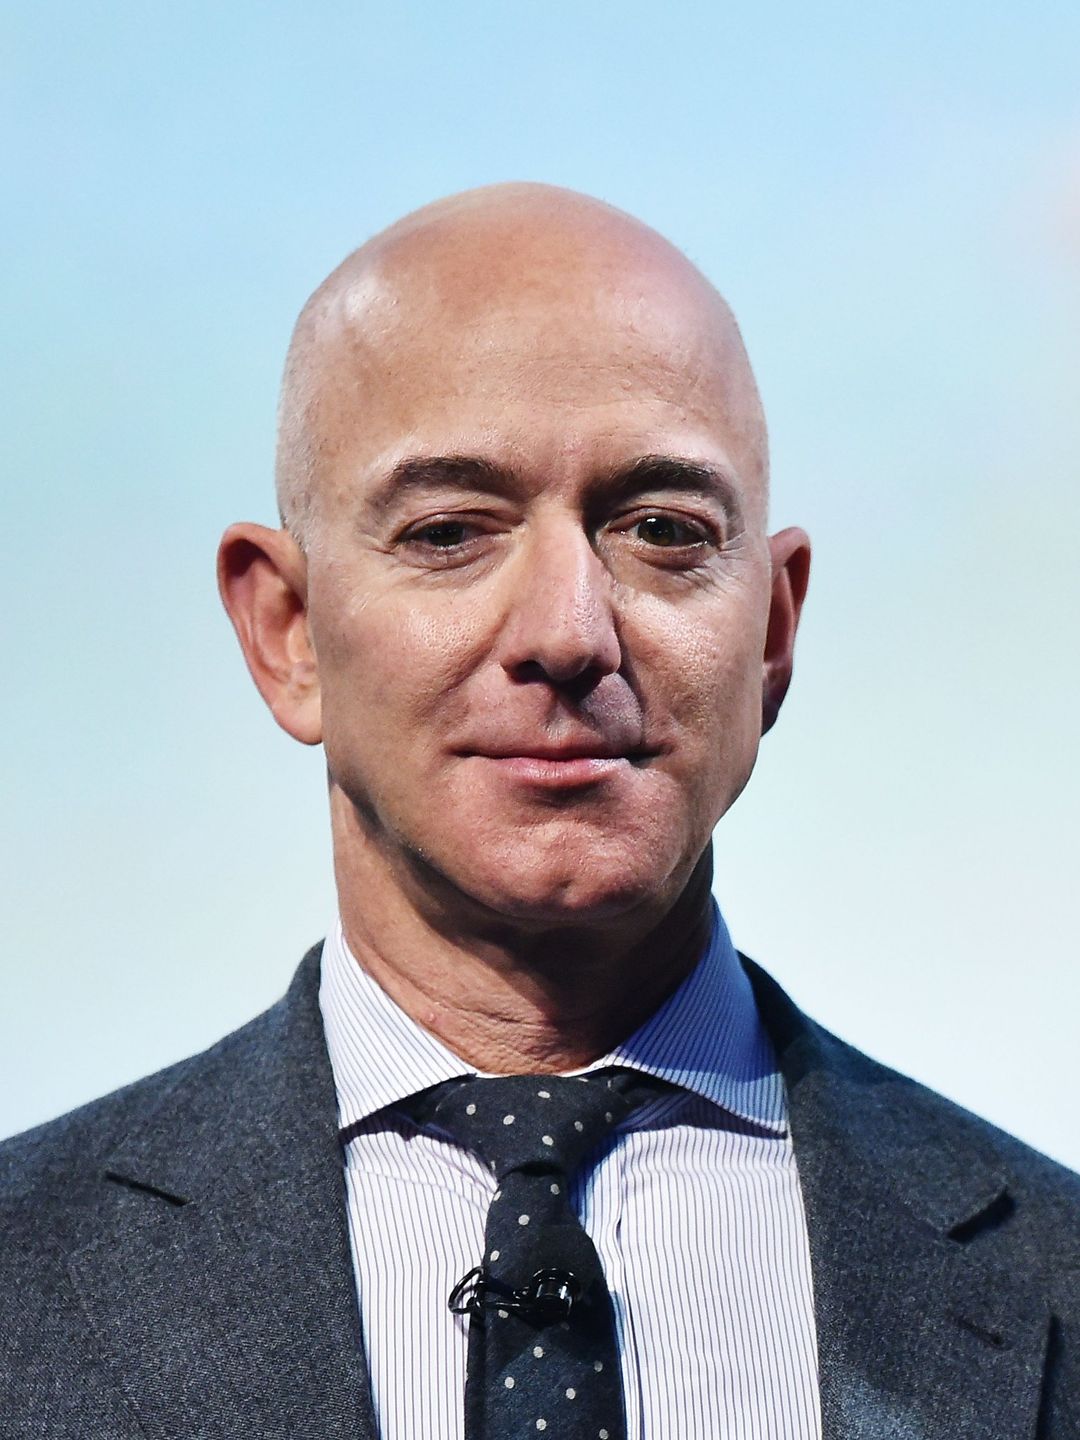 Jeff Bezos early career